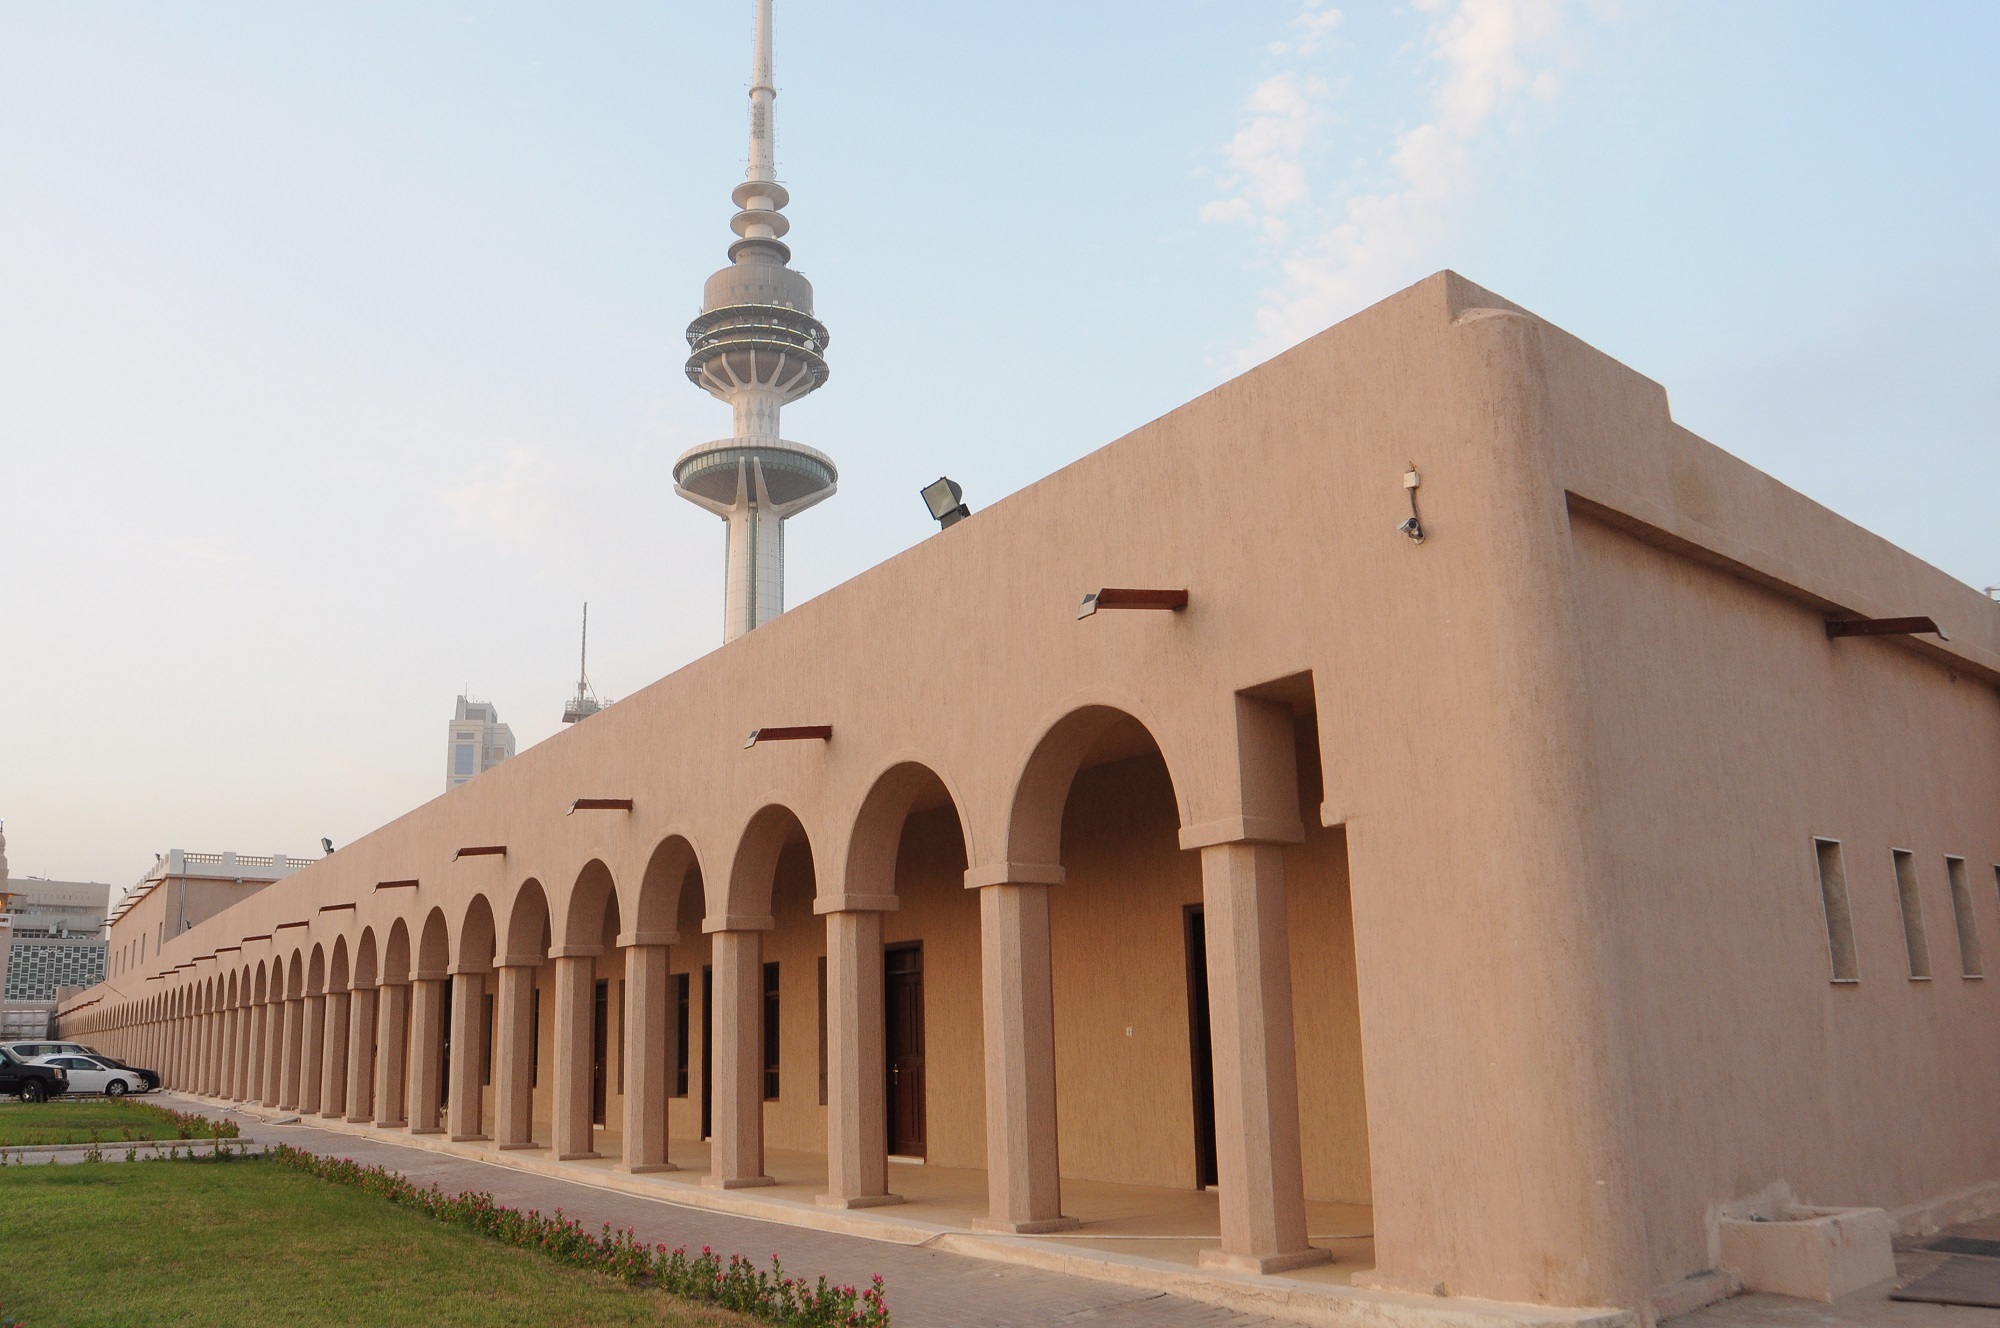 (قصر نايف) شاهدا على روعة المعمار في الكويت